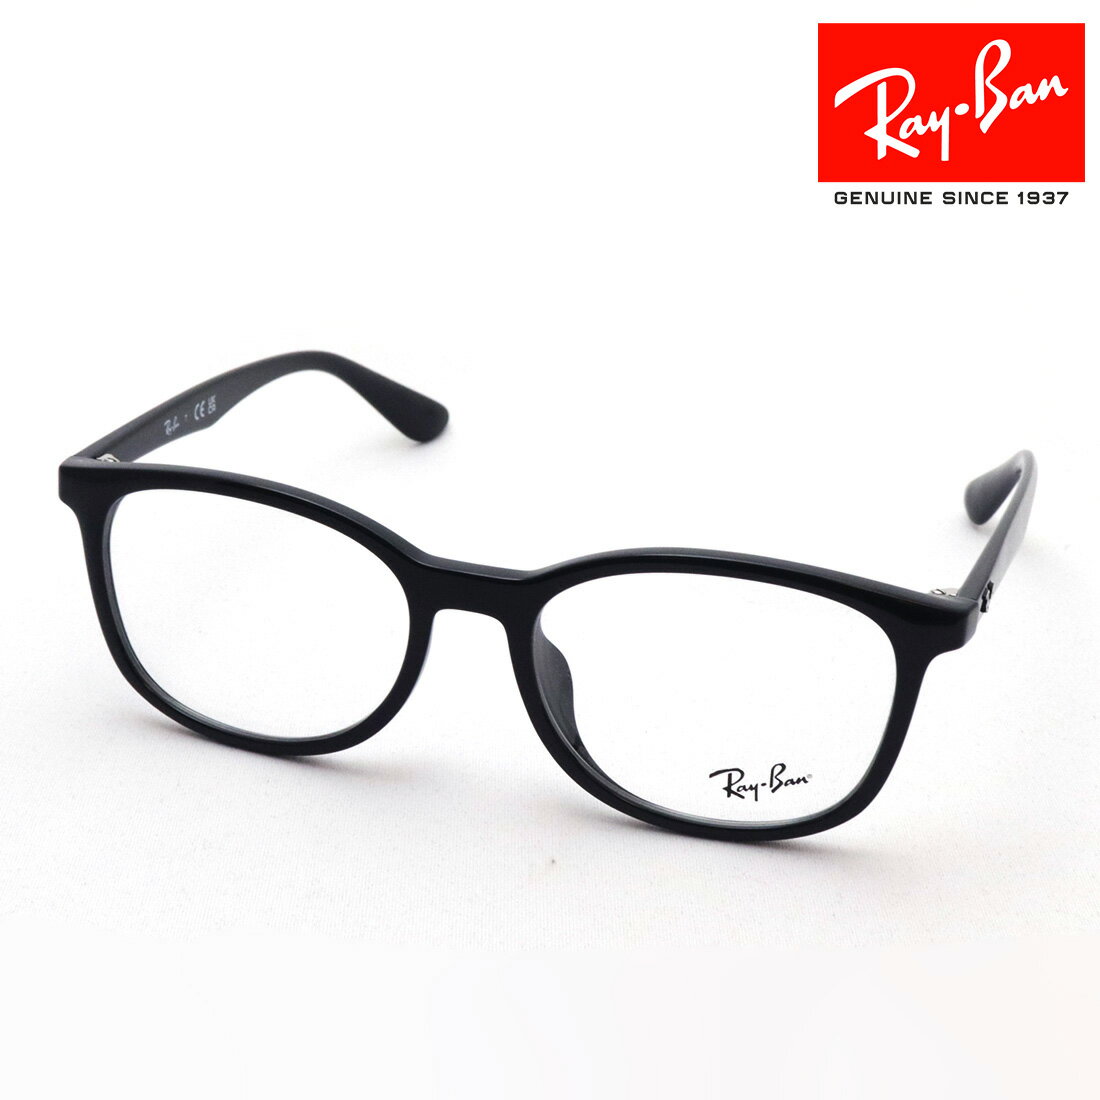 レイバン メガネ メンズ プレミア生産終了モデル 正規レイバン日本最大級の品揃え レイバン メガネ フレーム Ray-Ban RX7093D 2000 伊達メガネ 度付き ブルーライト カット 眼鏡 黒縁 RayBan スクエア ブラック系